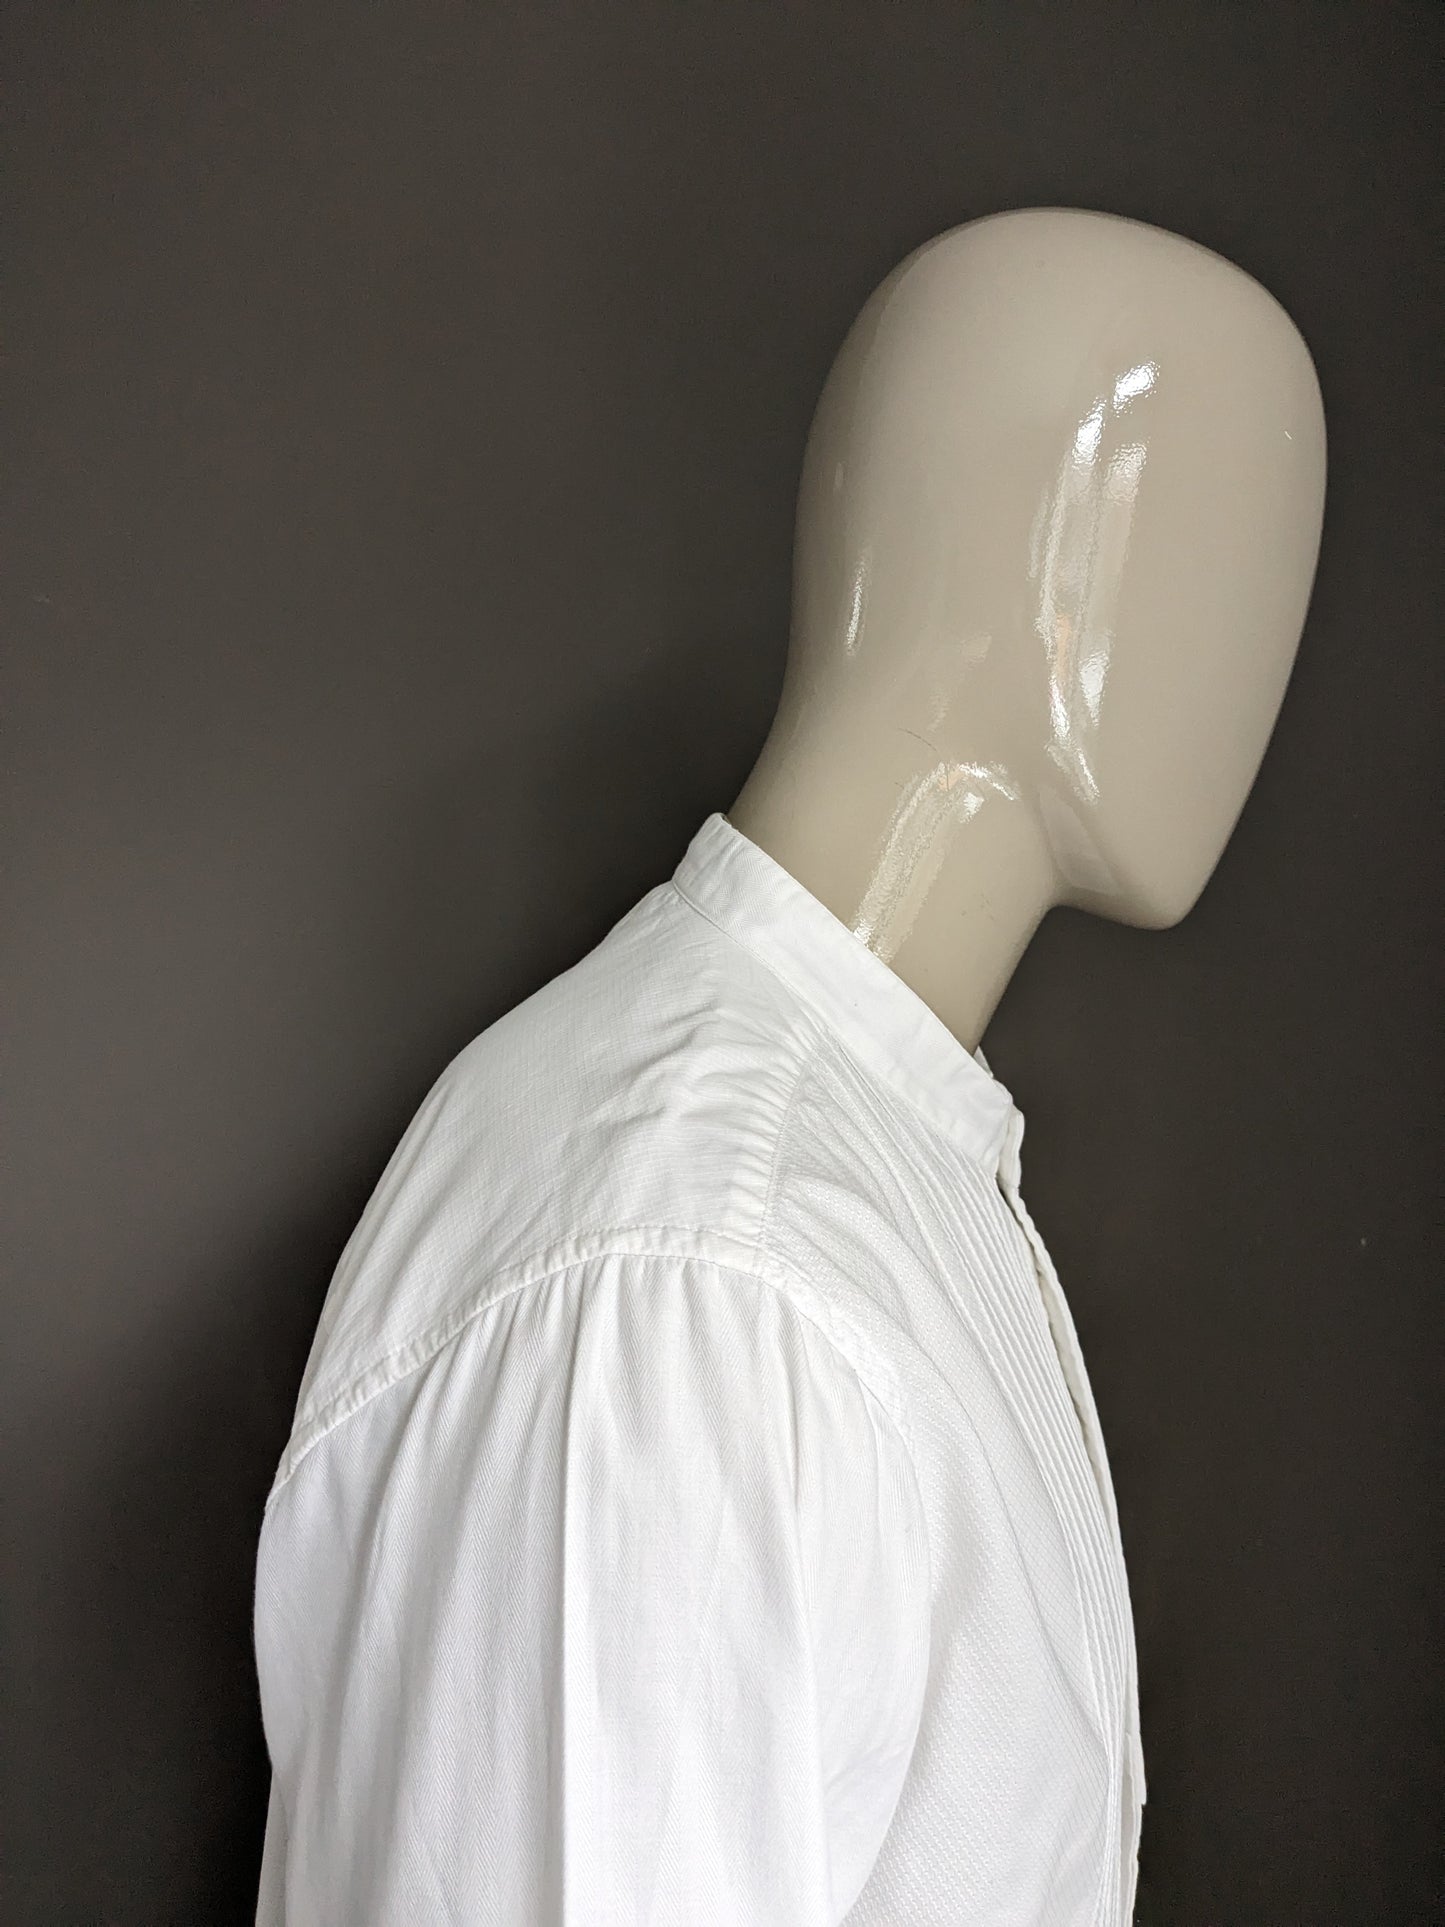 Camicia di denim Hilfiger con collare Mao / Standing. Bianco. Taglia L.